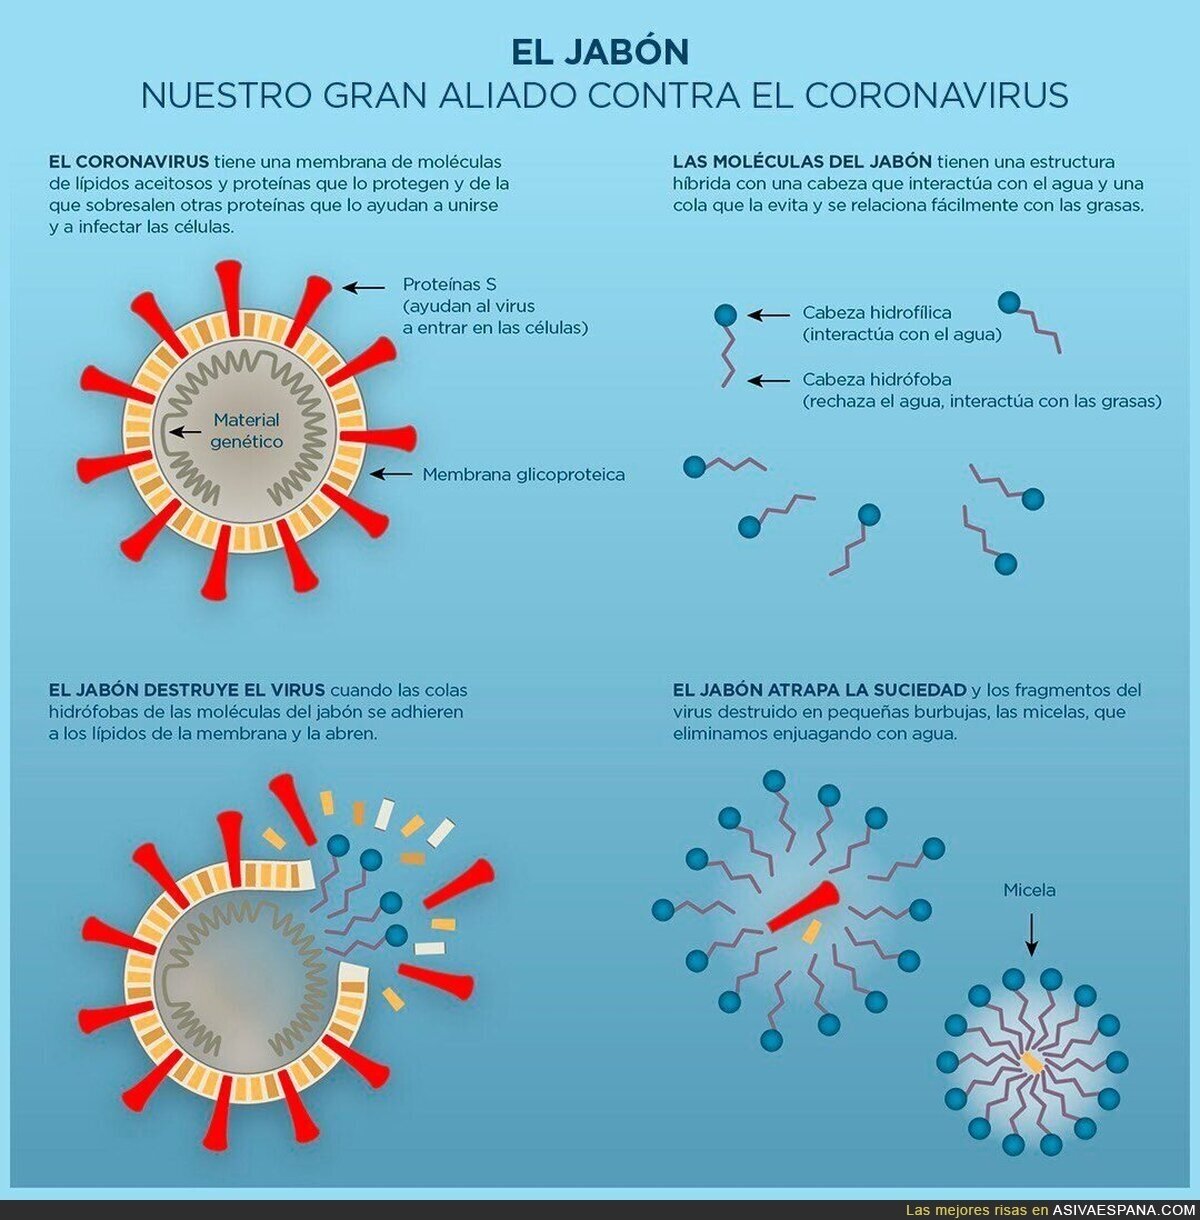 El gran aliado del coronavirus